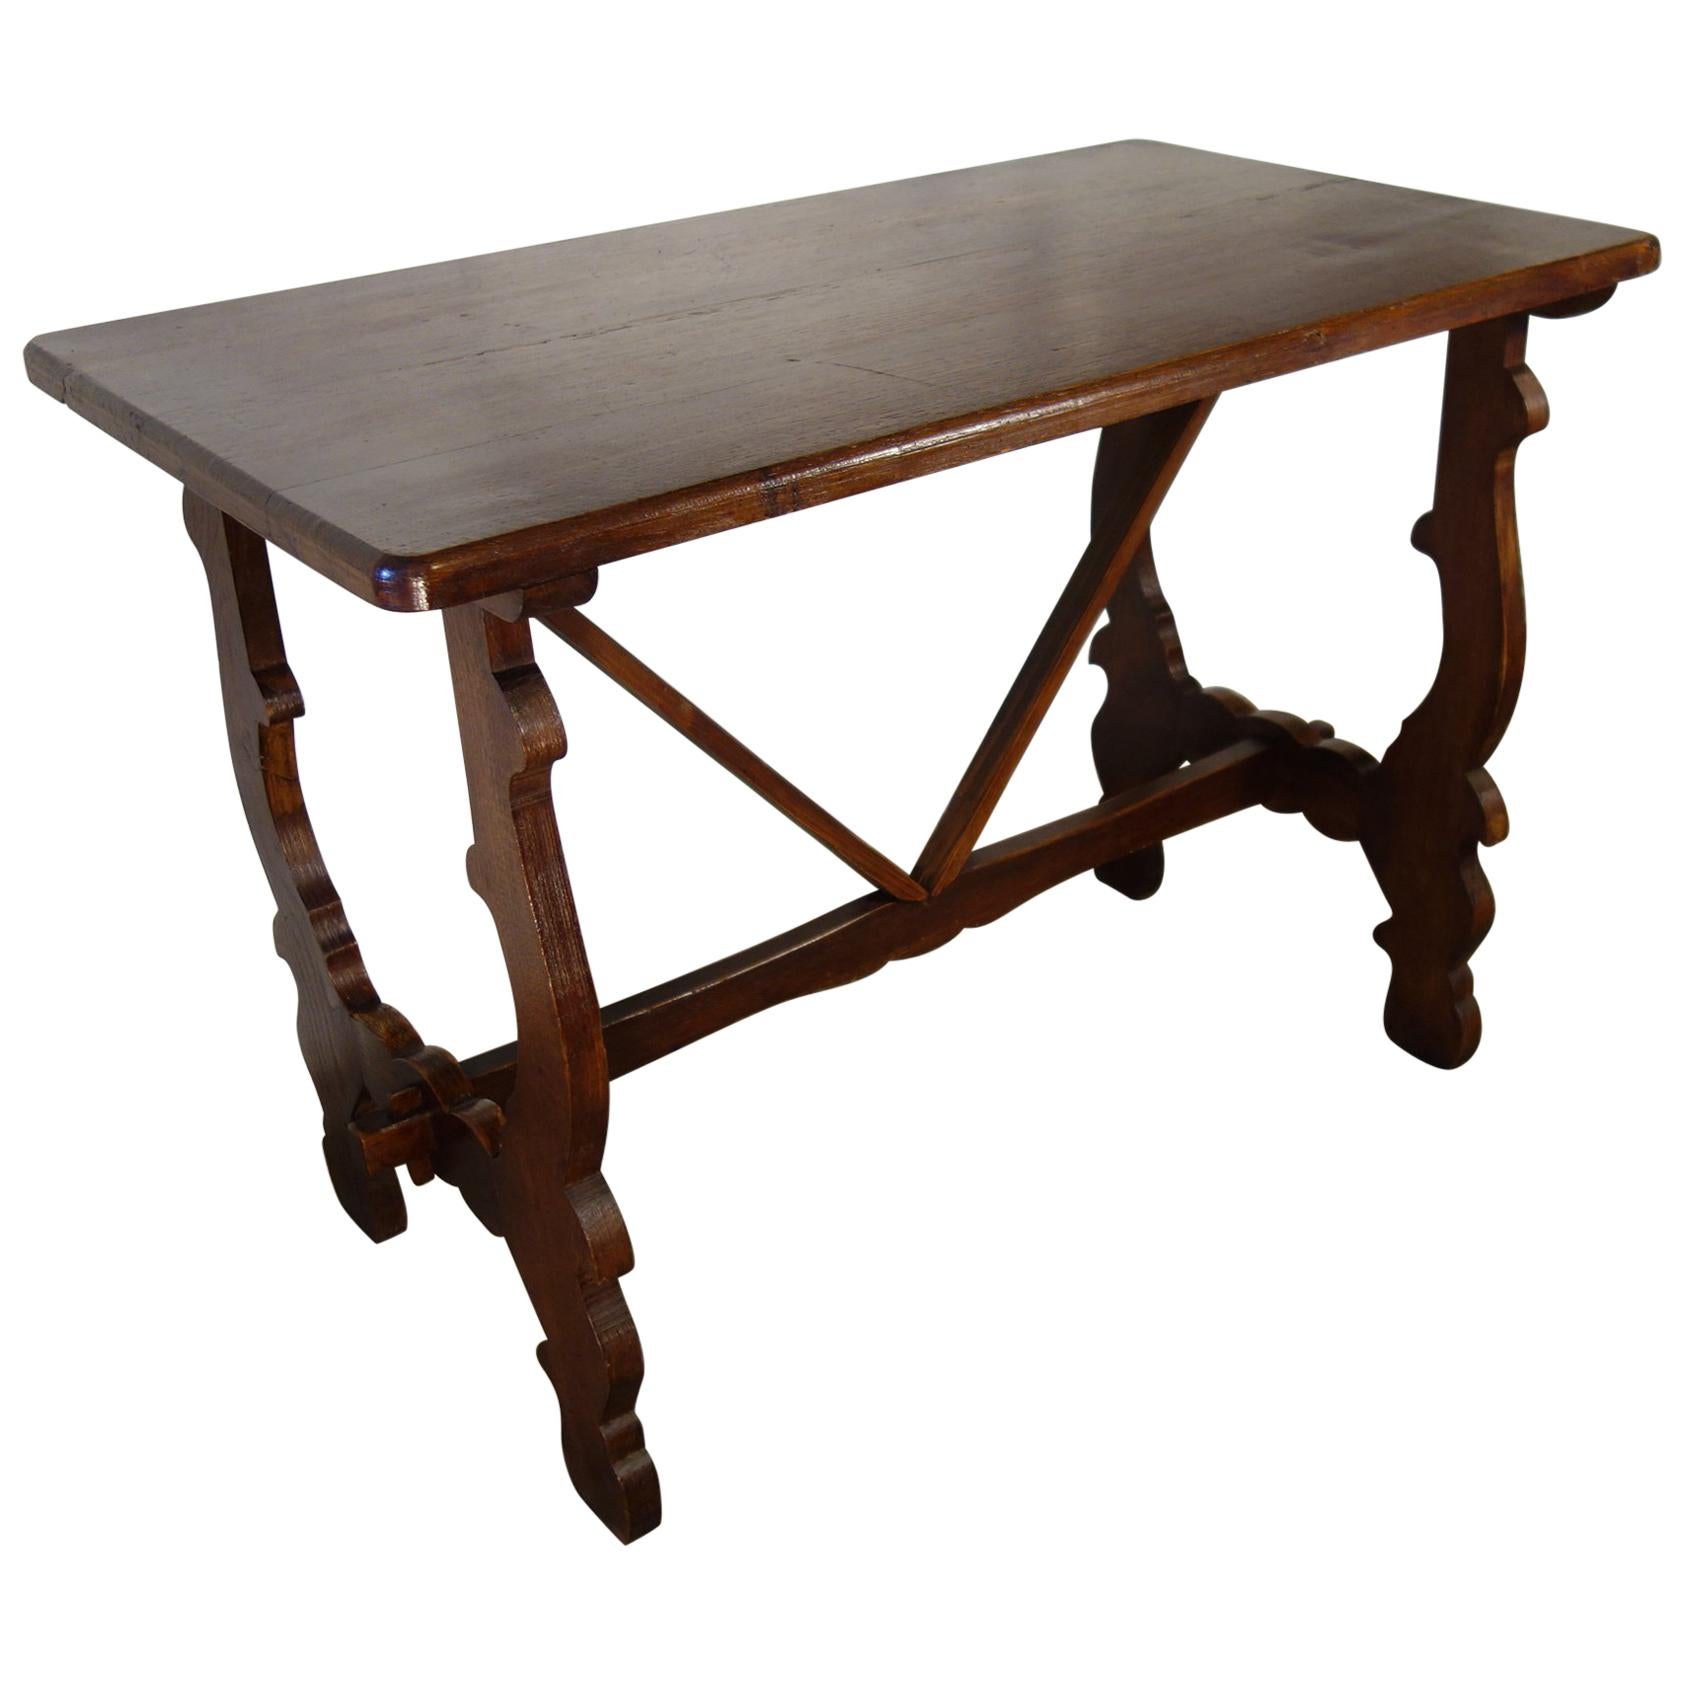 Antiker italienischer toskanischer Bauerntisch aus Eichenholz im Refektoriumsstil der Renaissance-Zeit, handgefertigt